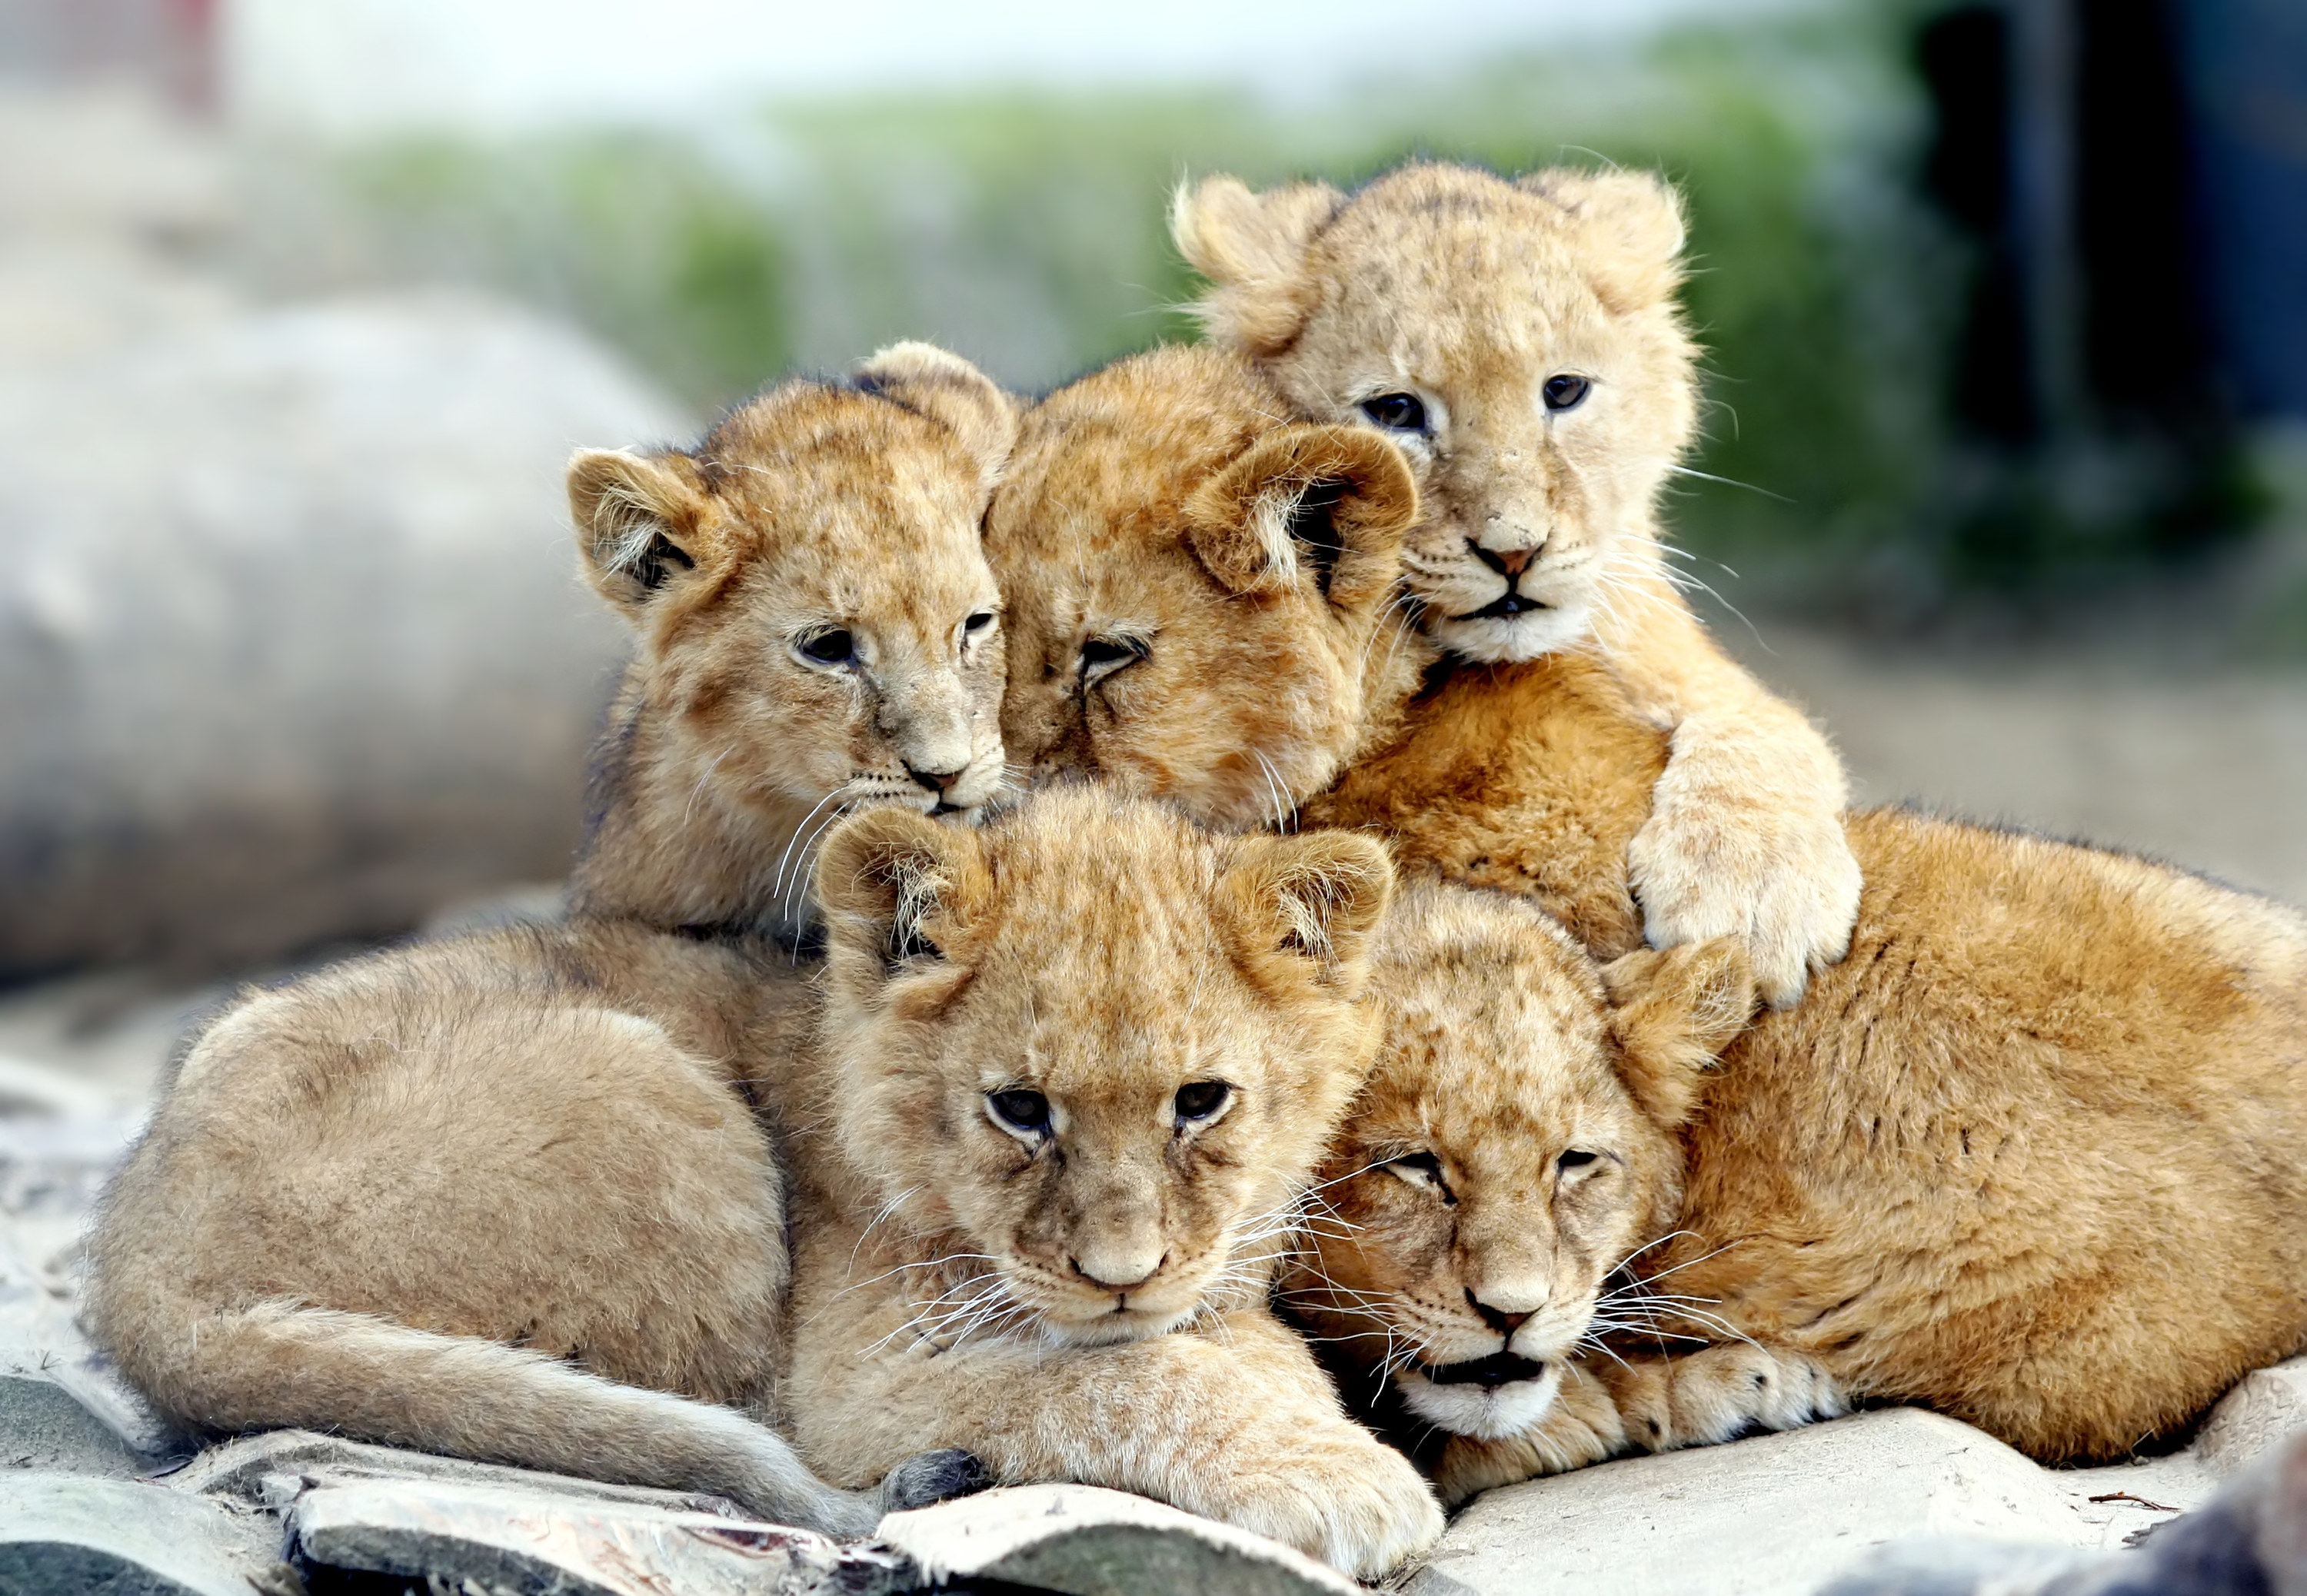 lion cubs snuggled together